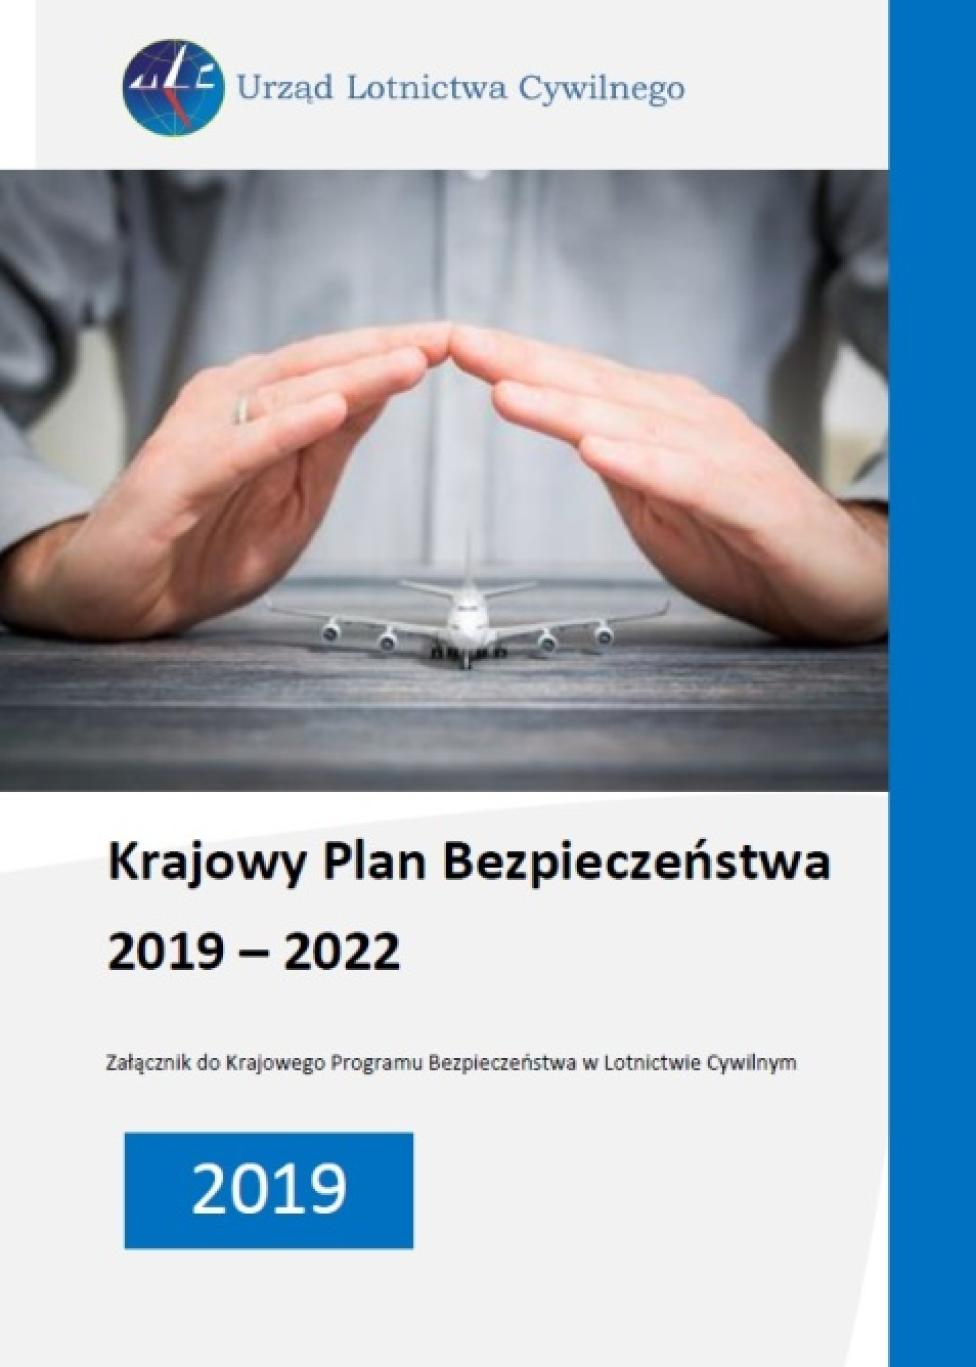 Krajowy Plan Bezpieczeństwa 2019 – 2022 (fot. ULC)